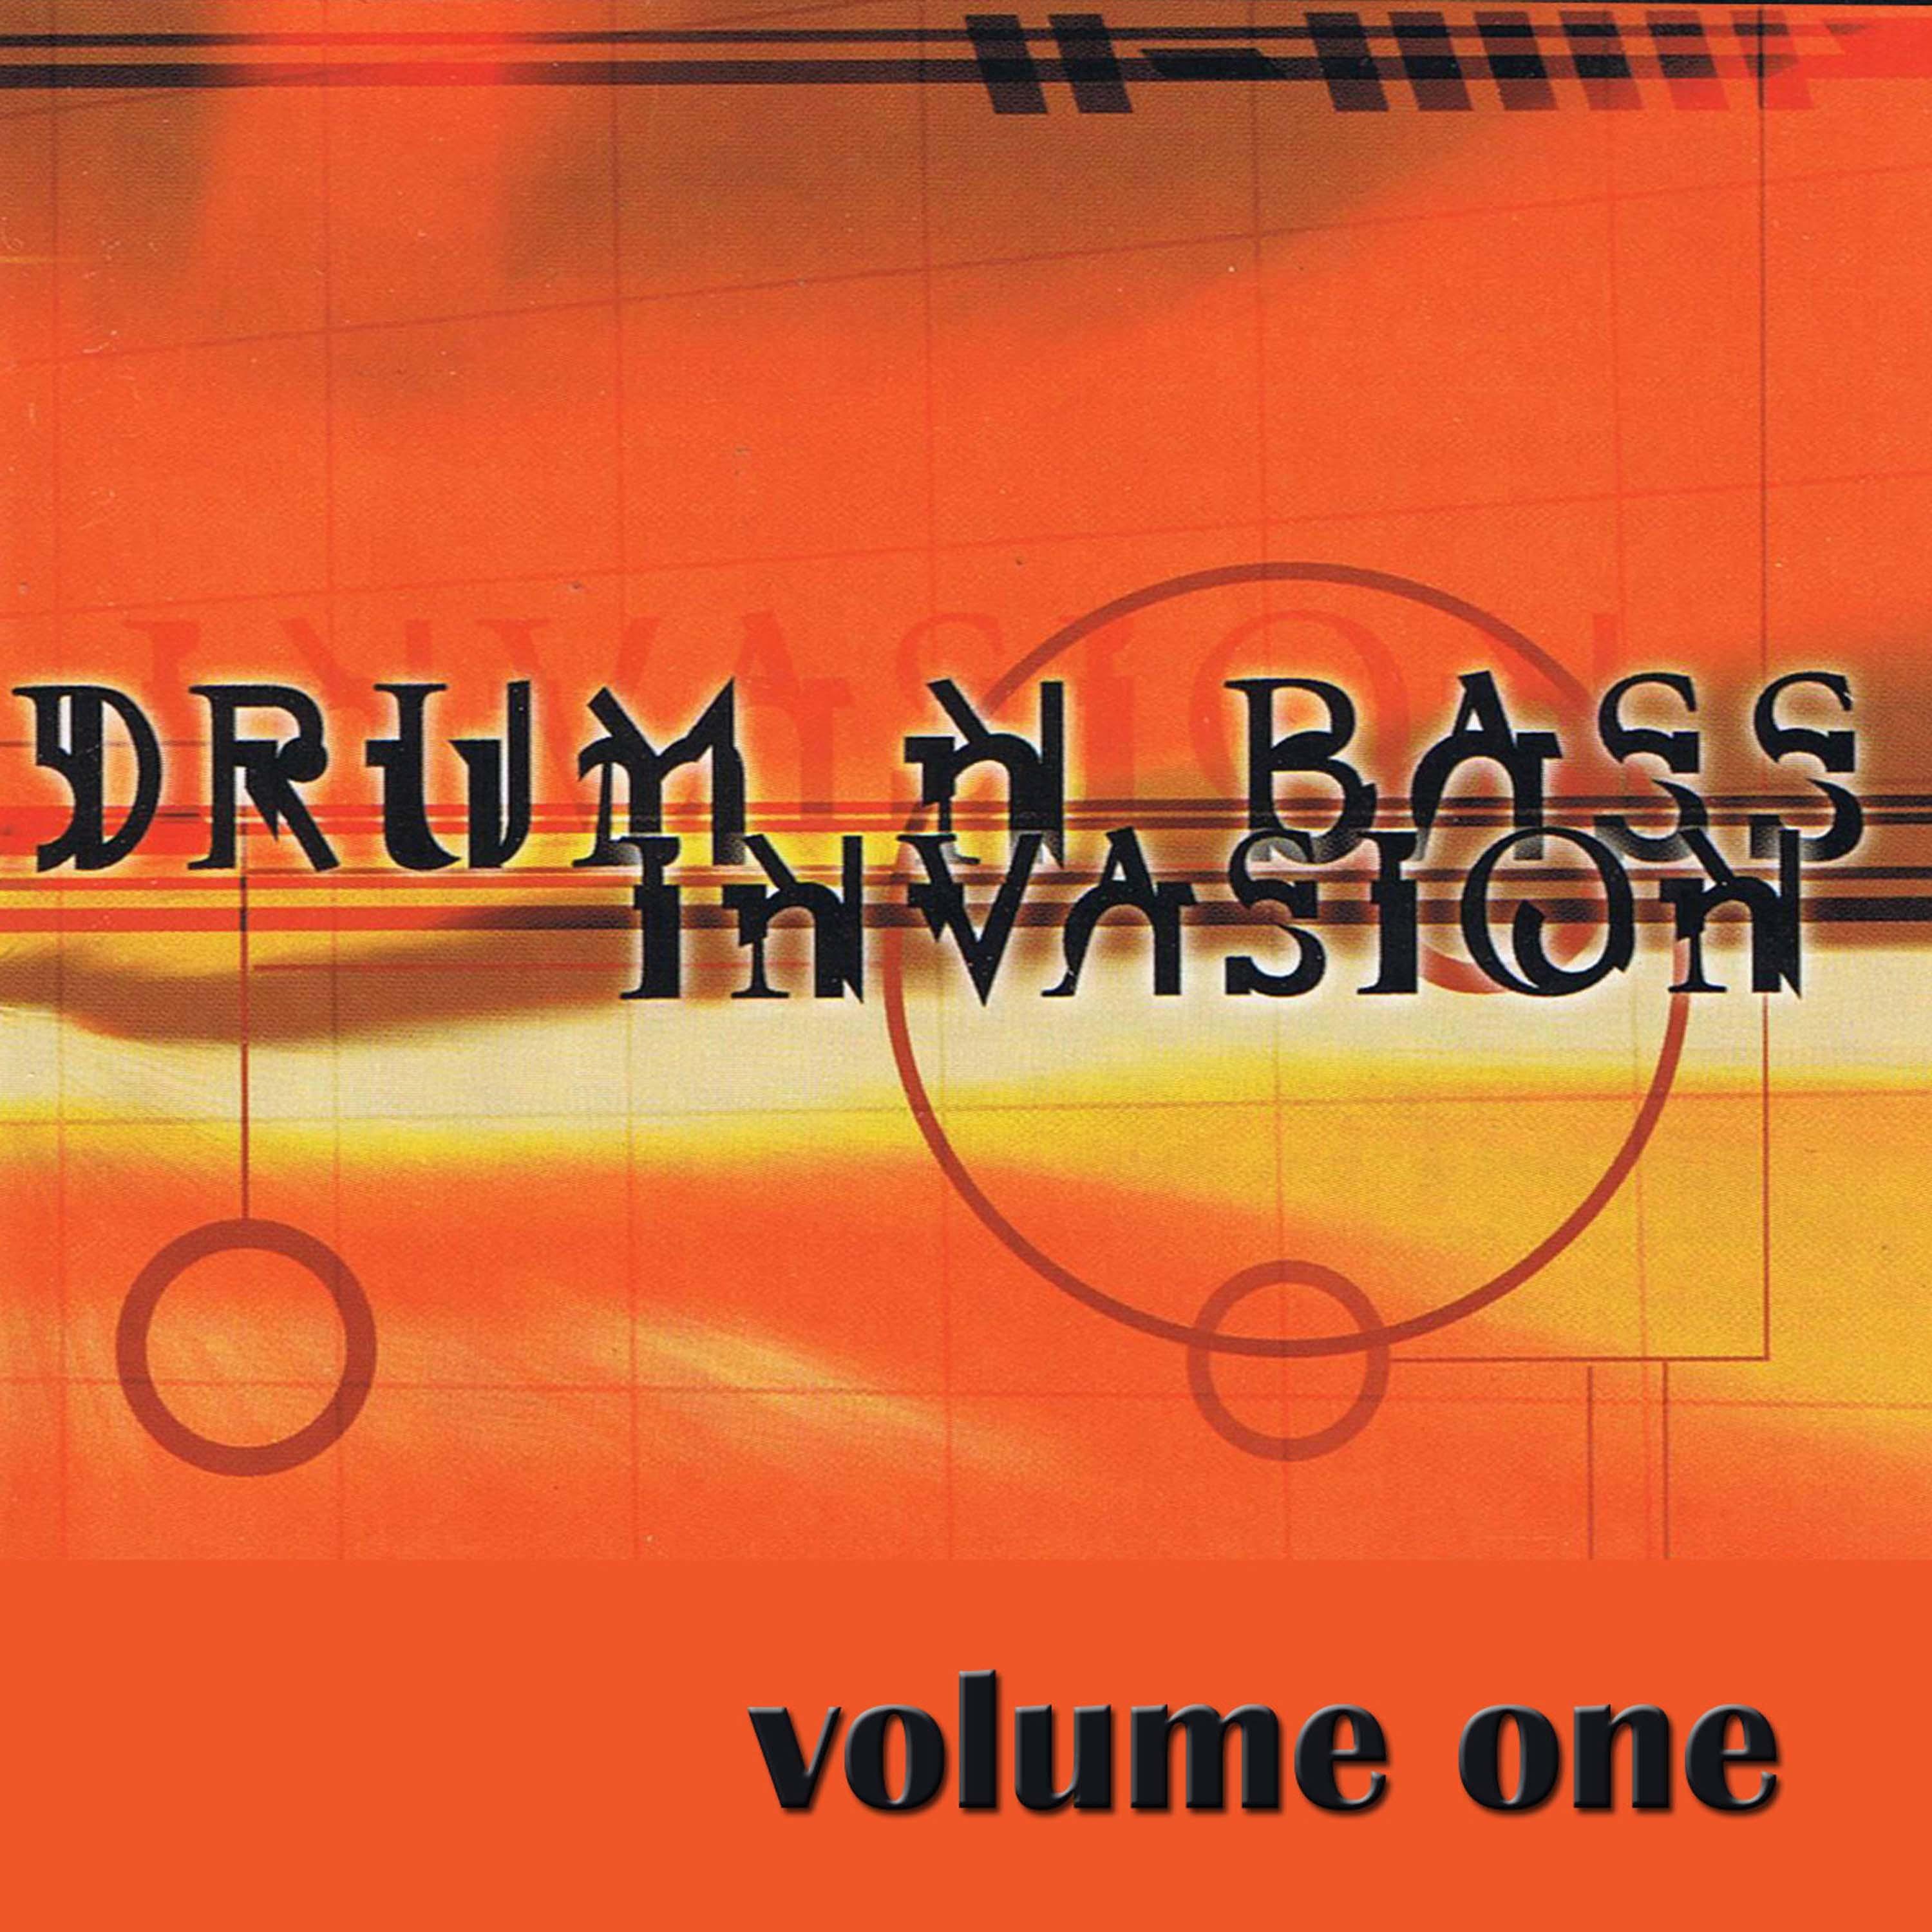 Drum 'n' Bass Invasion, Vol. 1